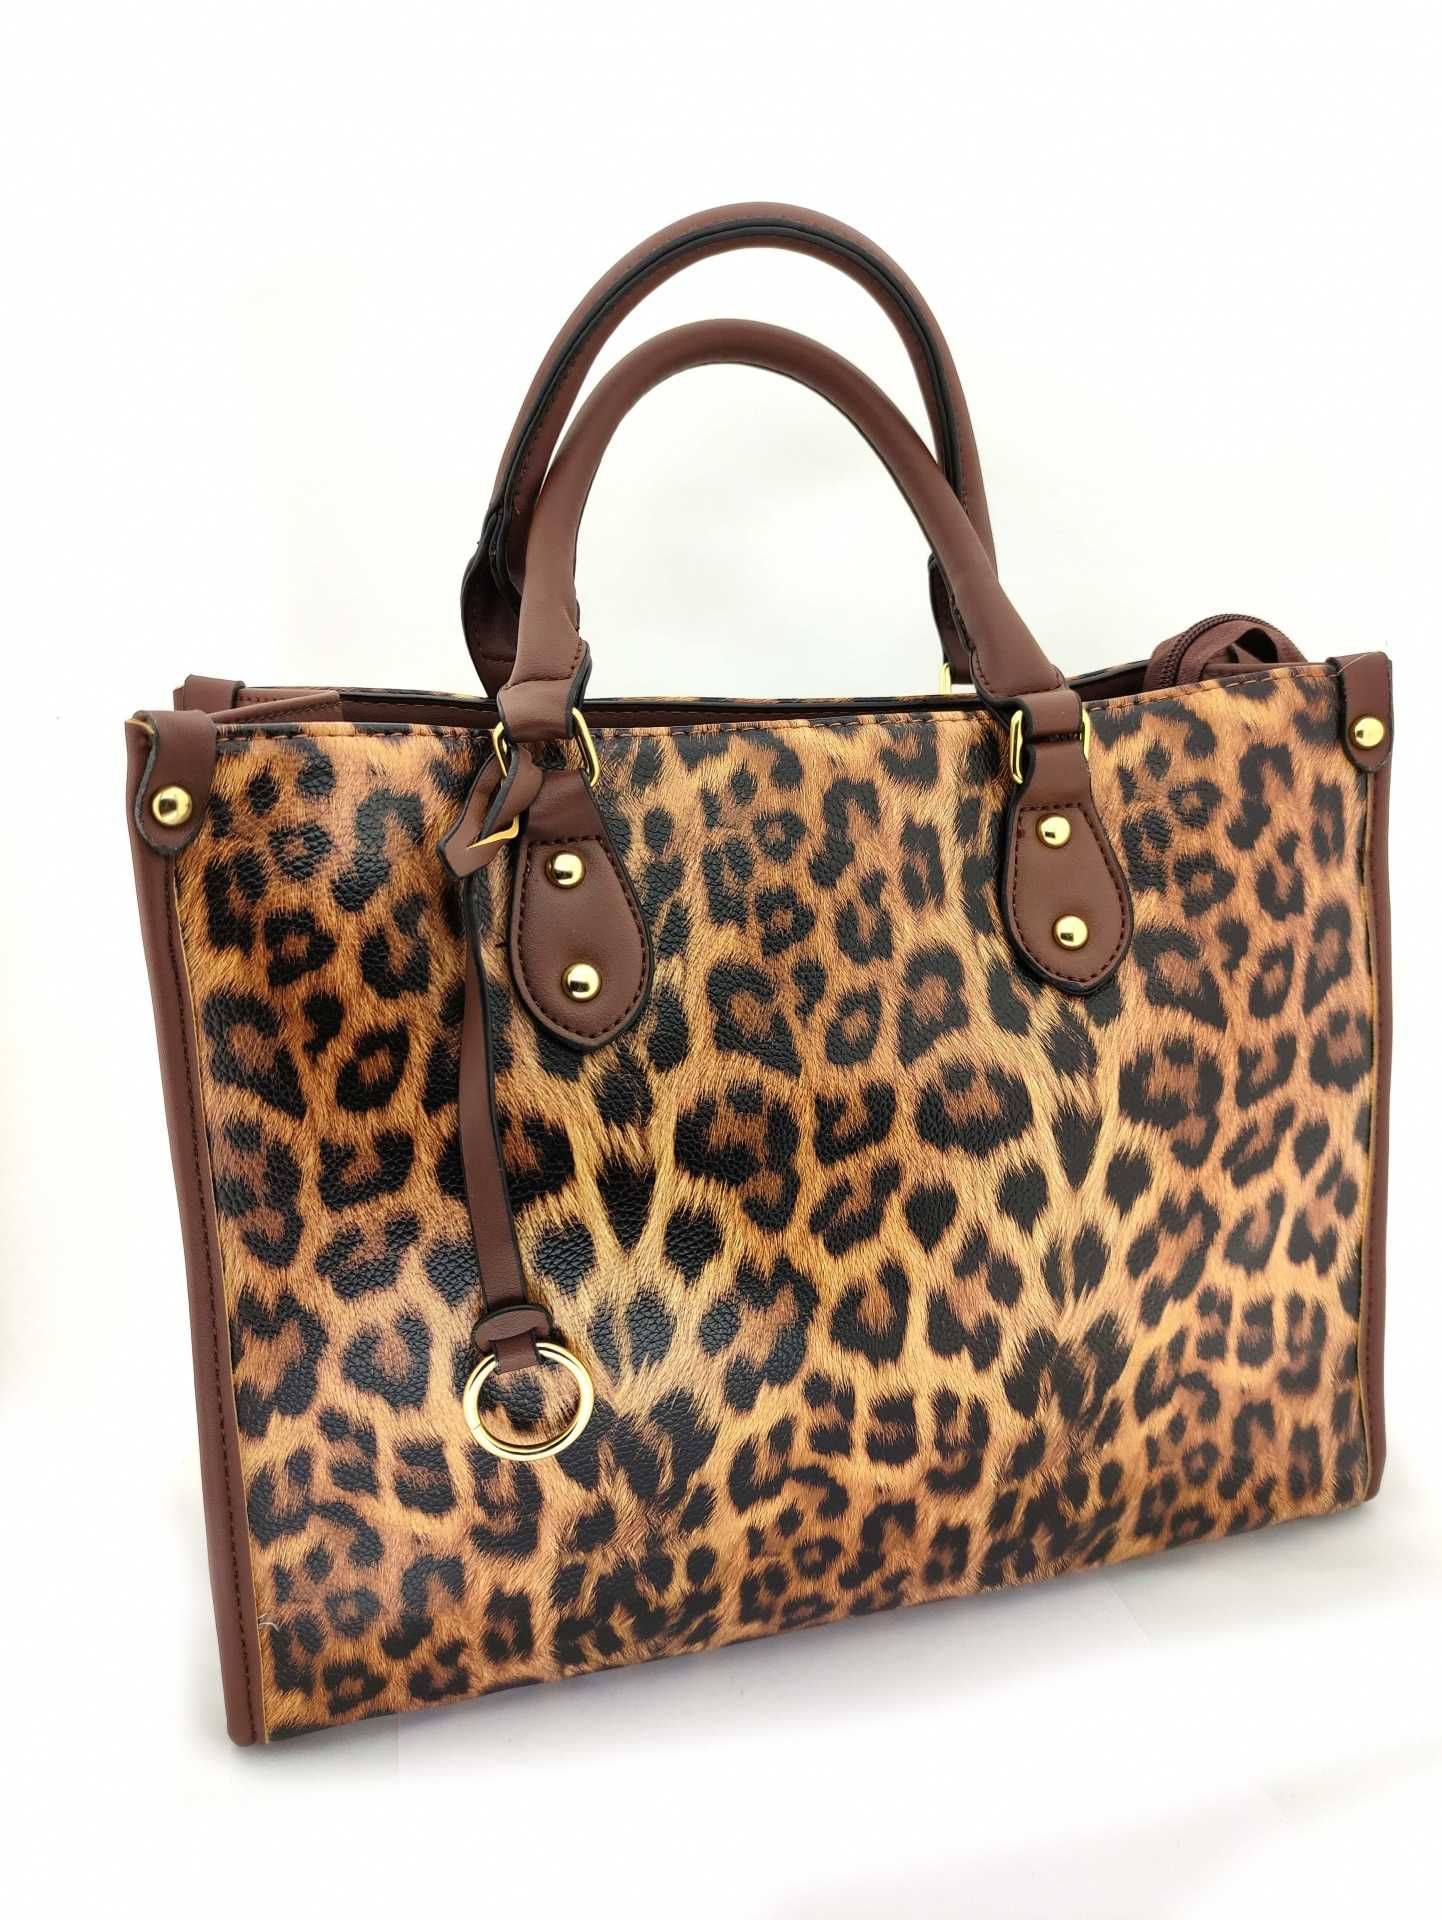 Grande mala Leopardo - Leopardo Bag